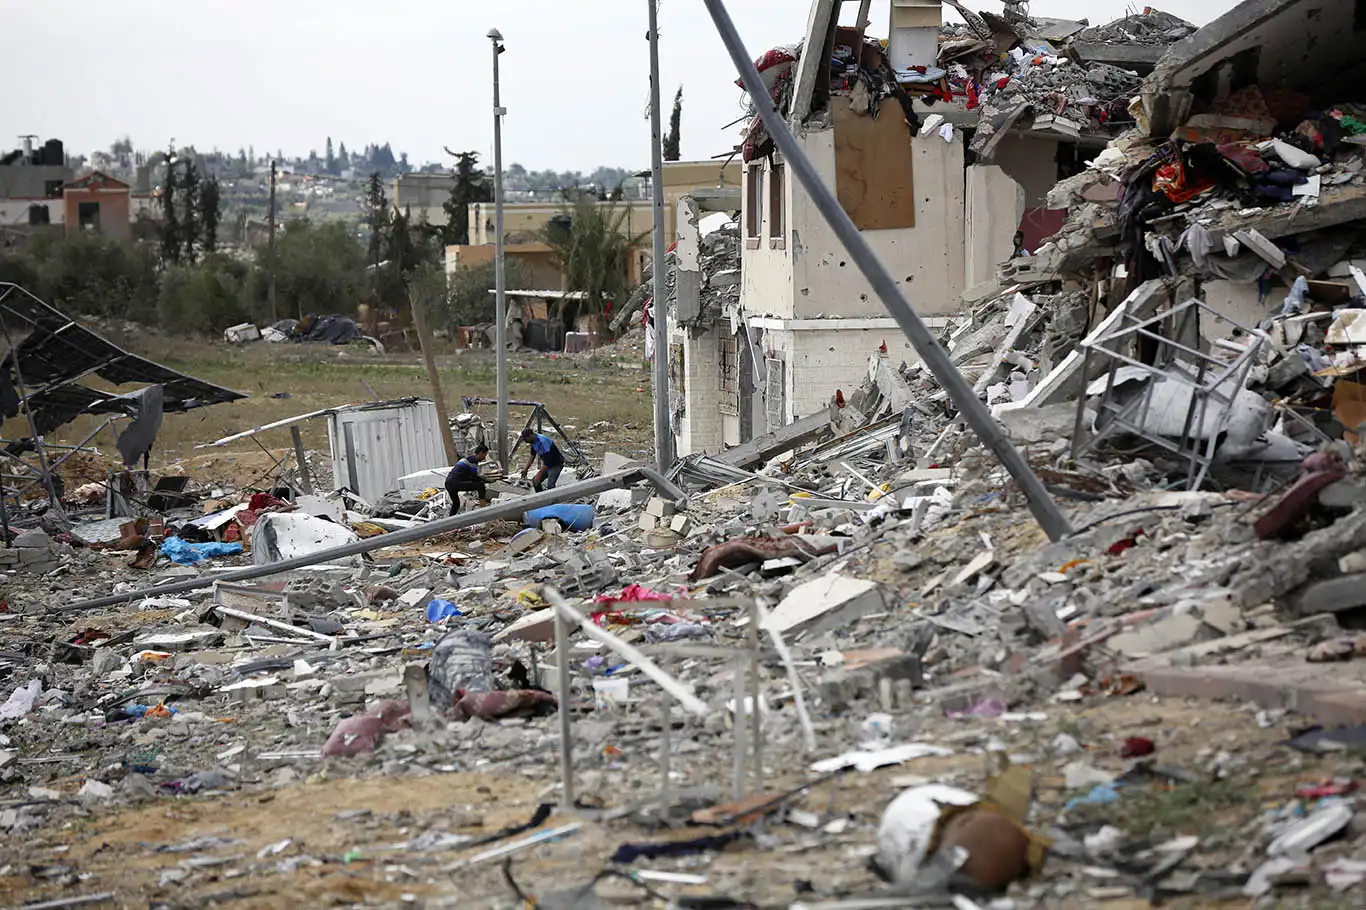 Oxfam: Gazze’ye insani yardım kasıtlı olarak engelleniyor